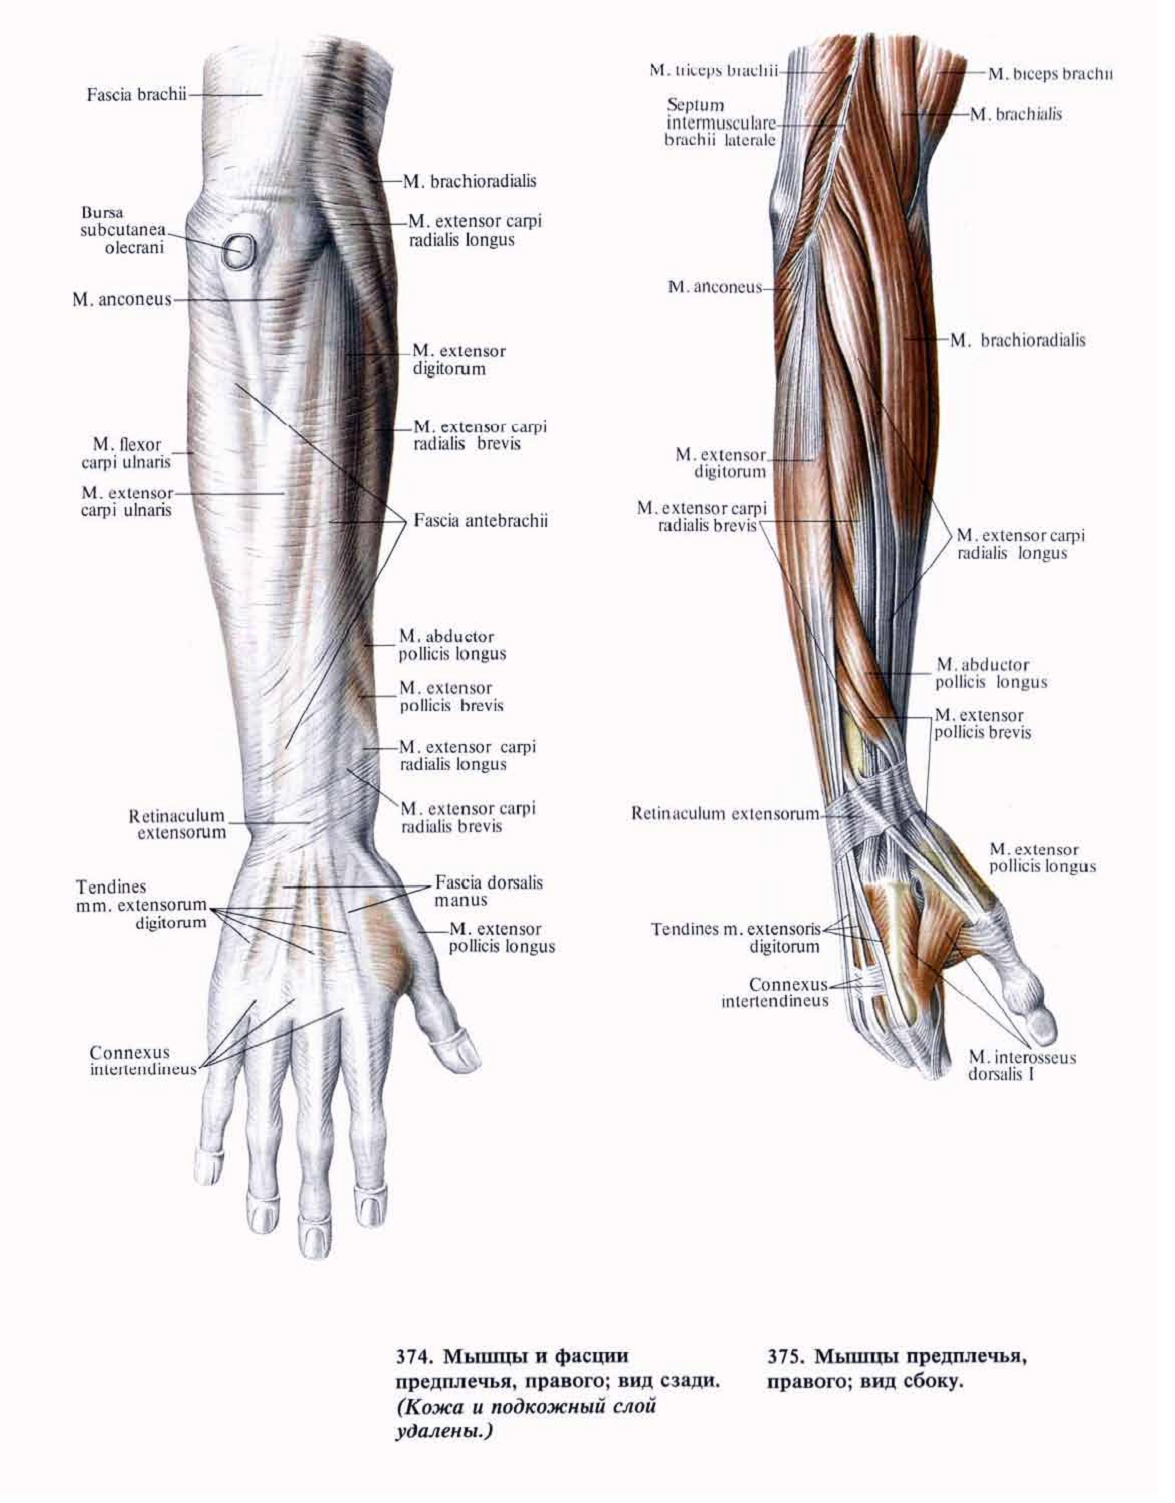 Кости предплечья у человека: анатомия, фото на скелете и где находится, внешняя сторона предплечья, мышцы плеча и предплечья